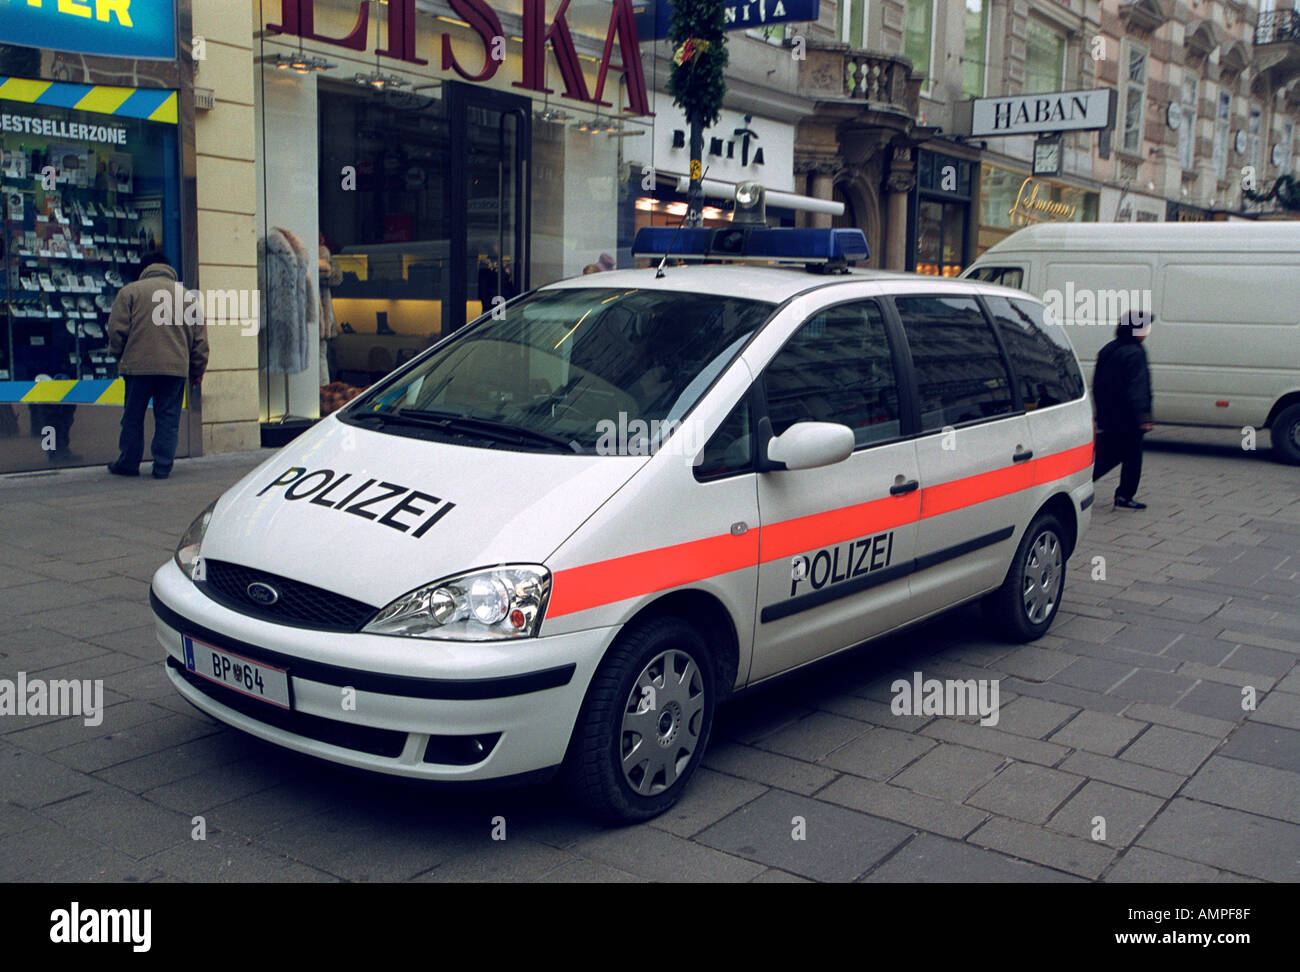 Police car in Bratislava Slovakia Stock Photo